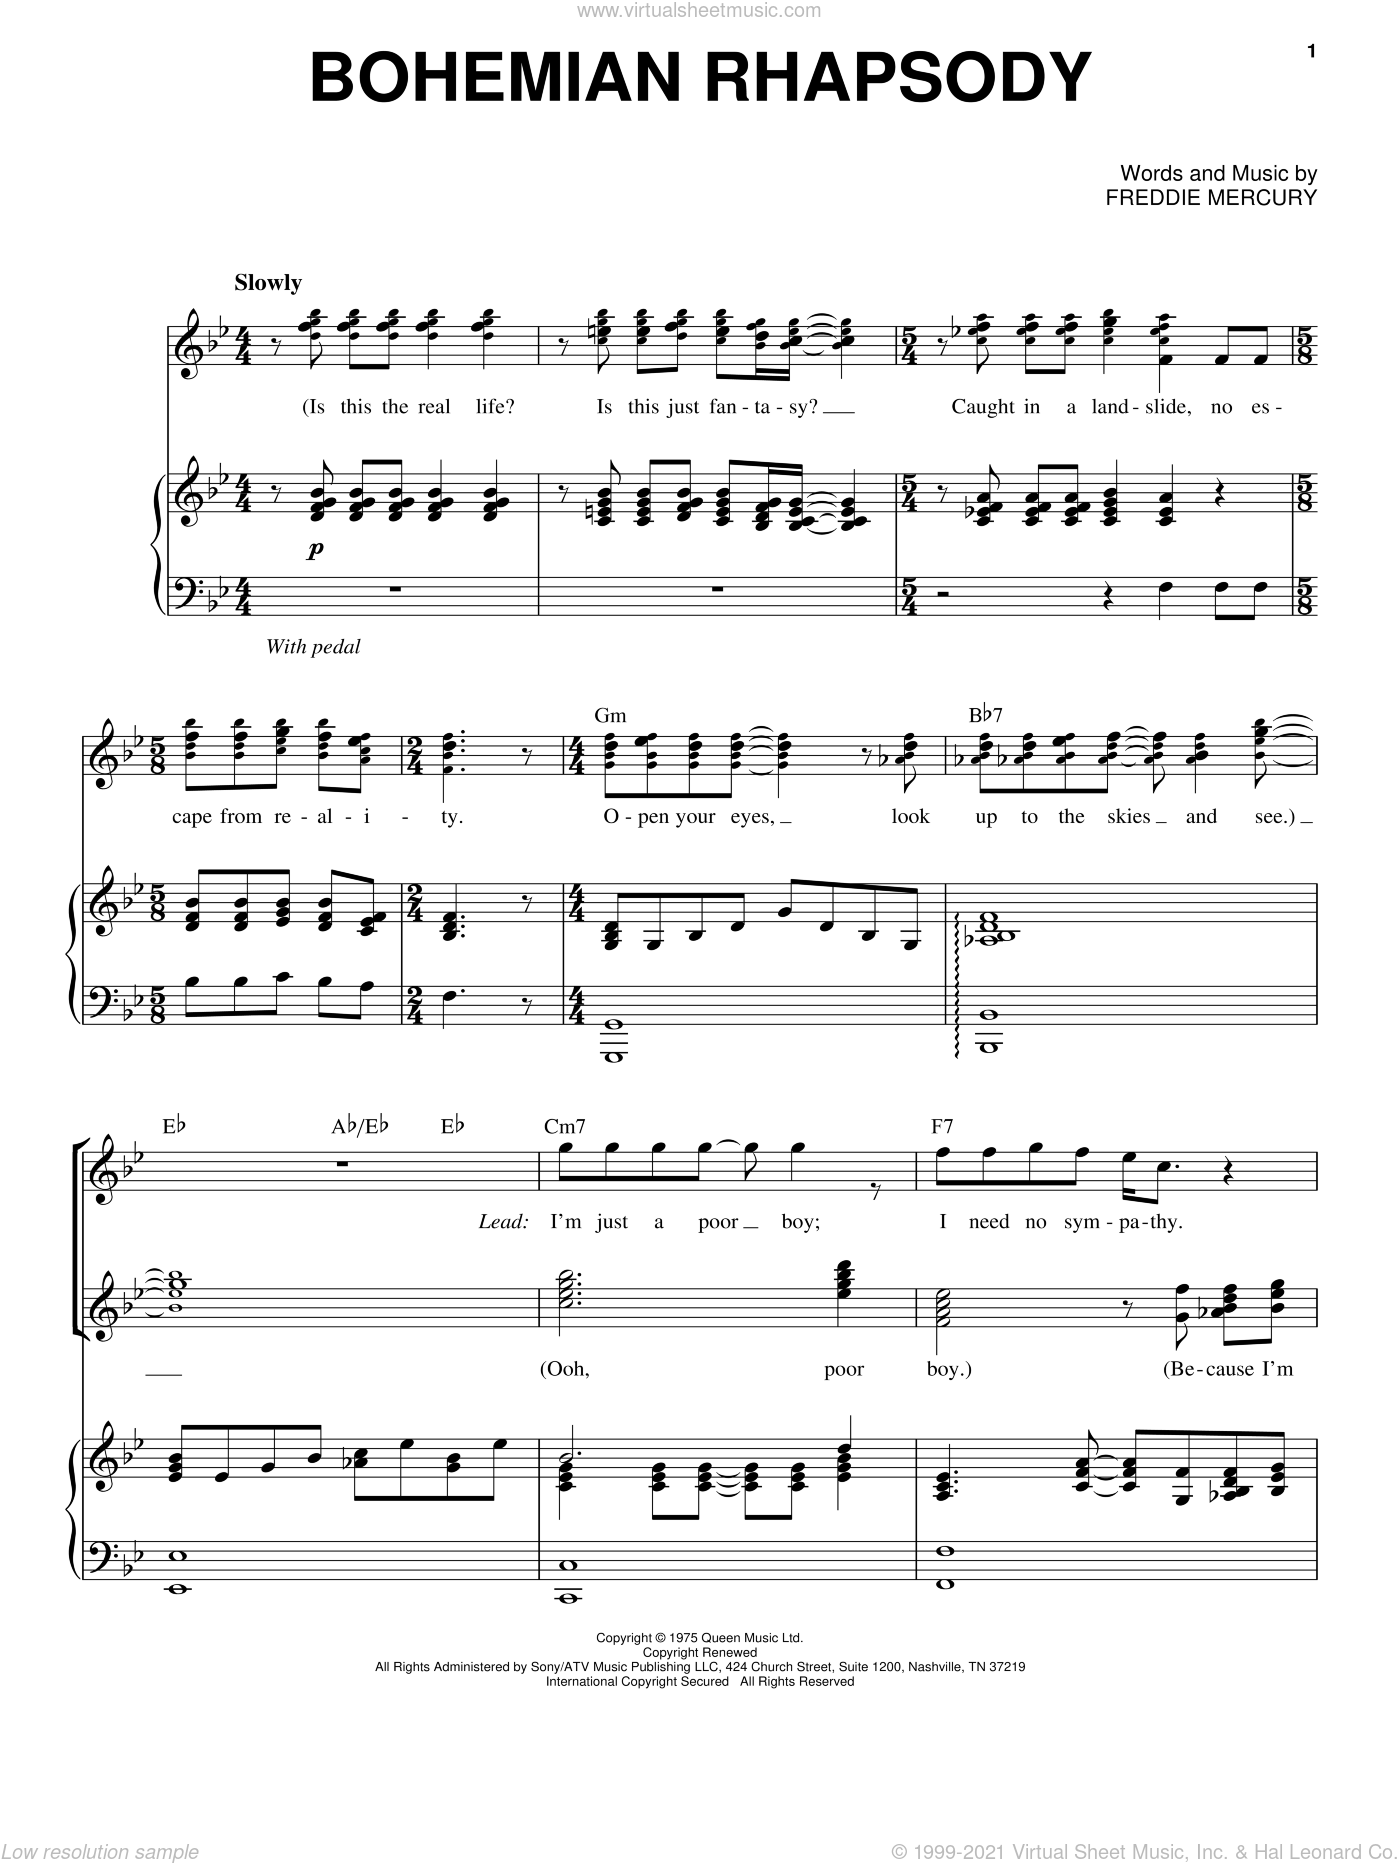 Bohemian Rhapsody Score Pdf